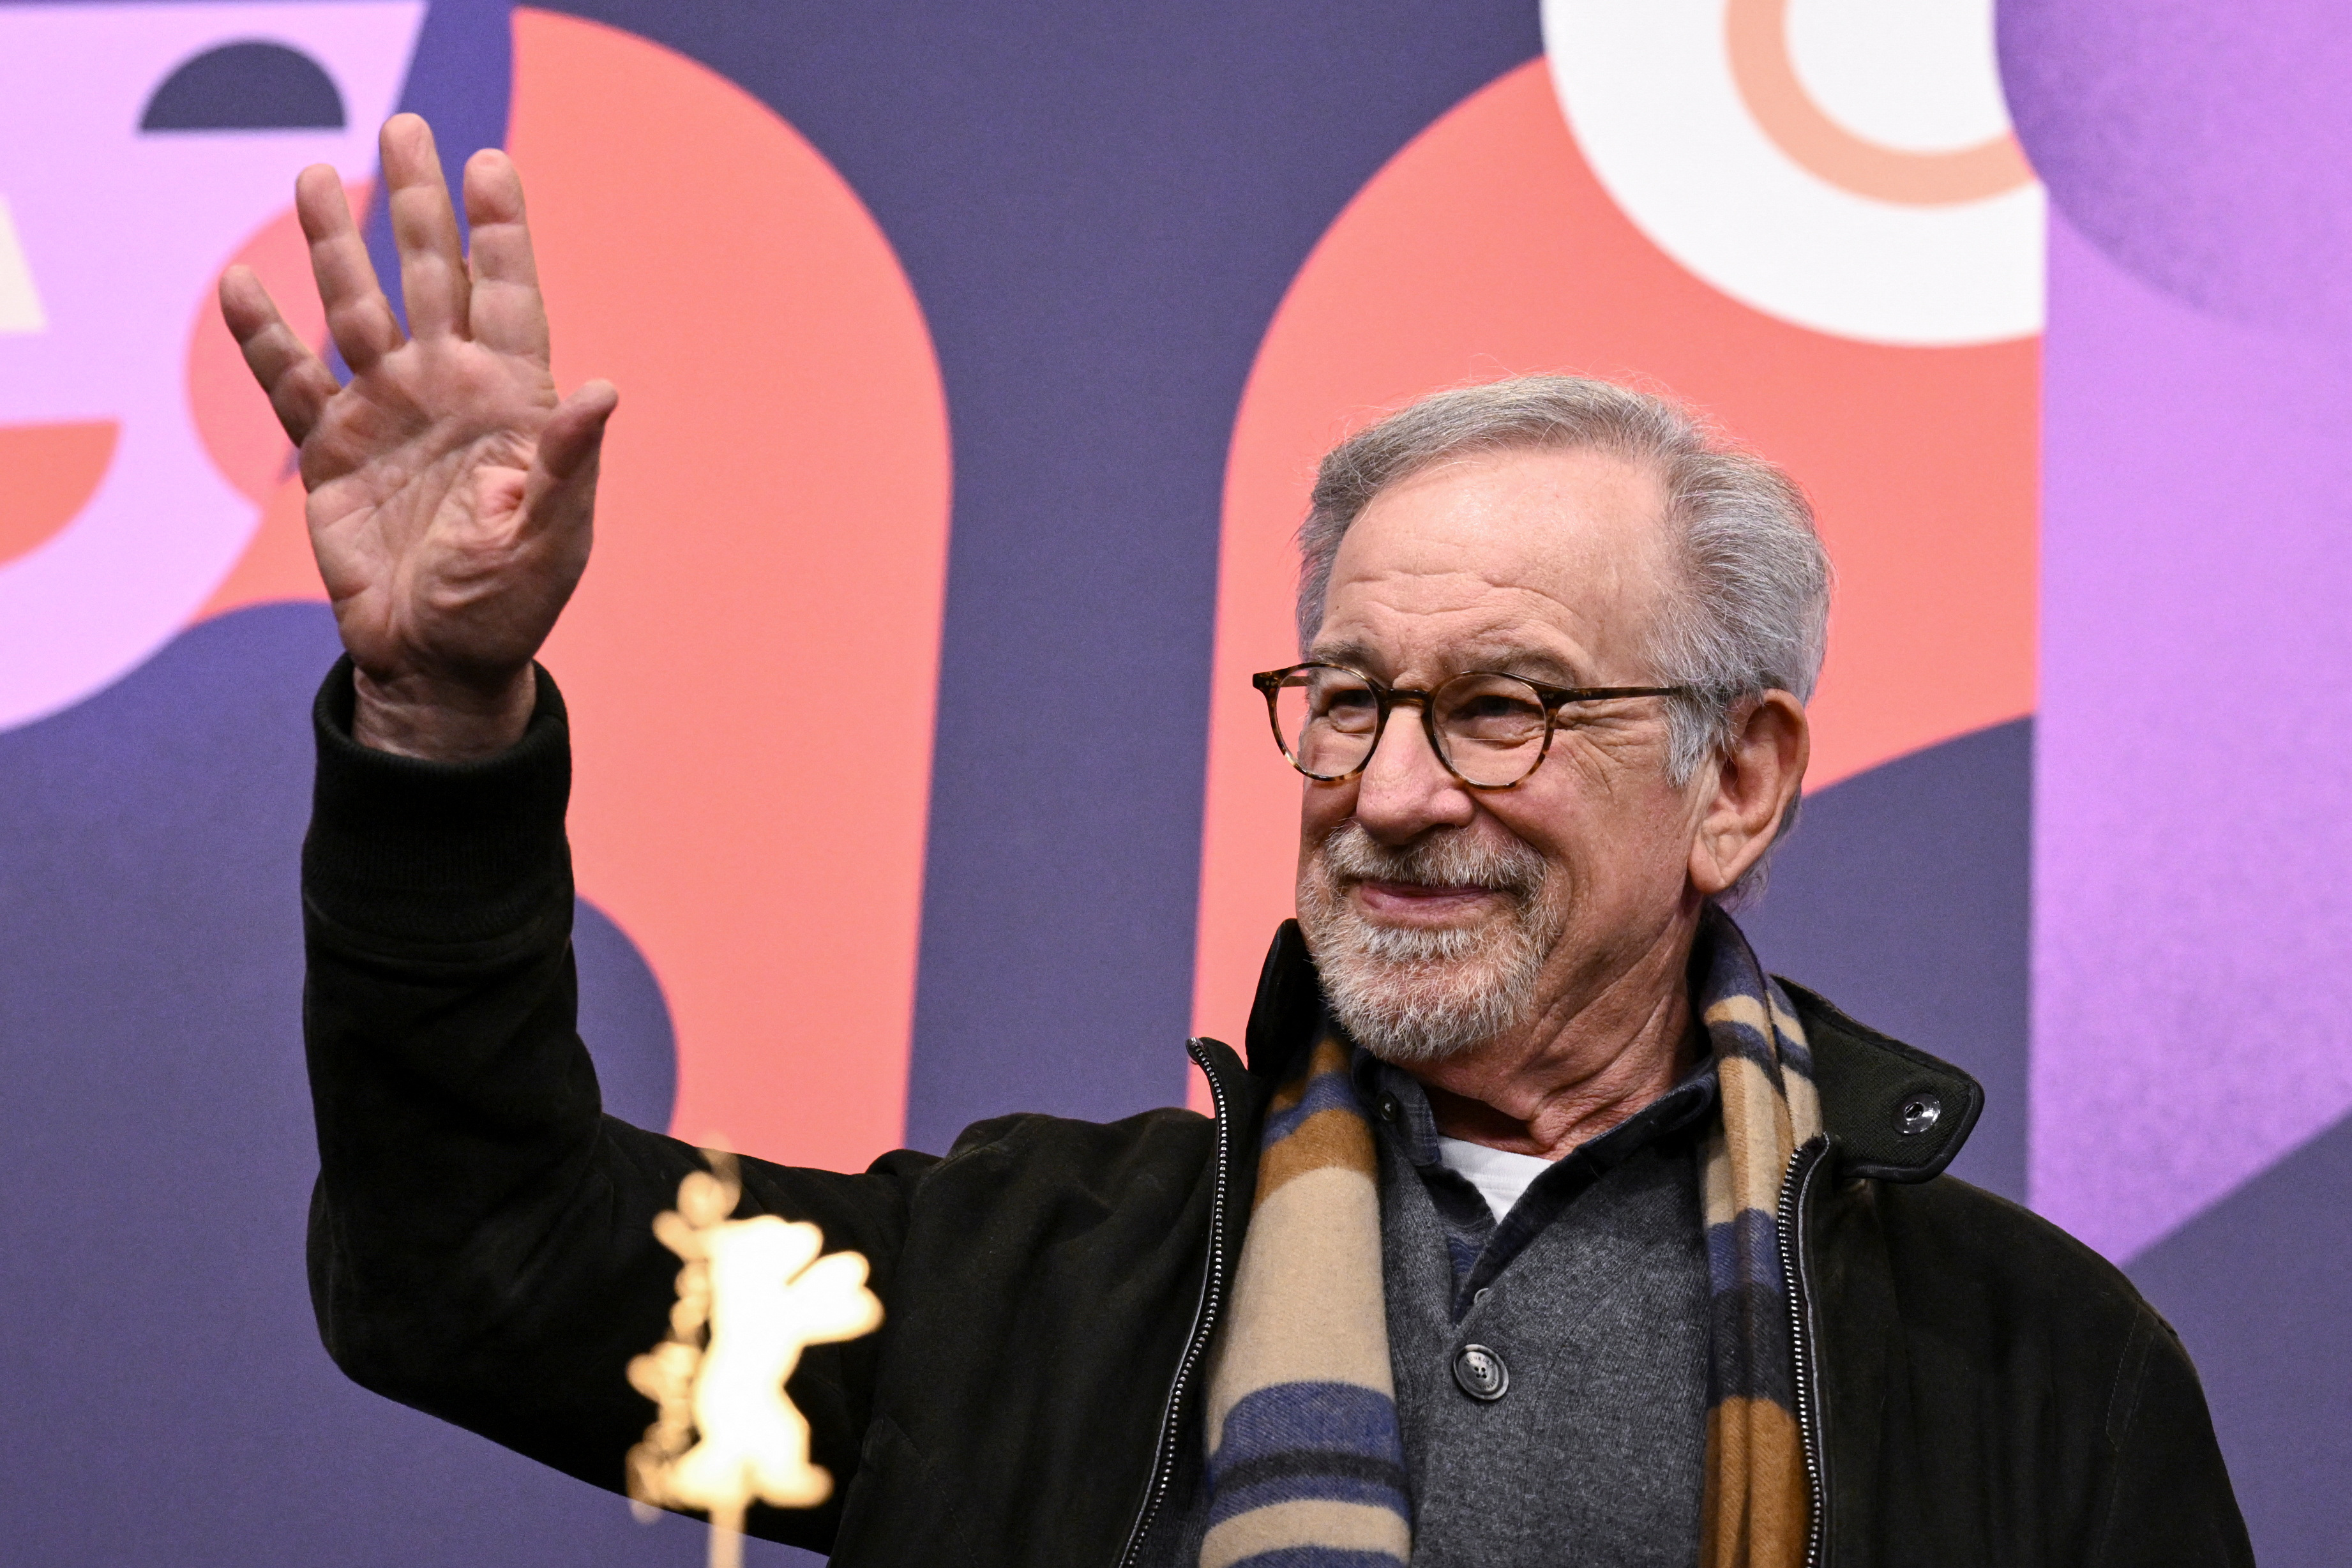 El director Steven Spielberg saluda durante una conferencia de prensa antes de recibir el Premio Honorario Oso de Oro por su trayectoria, en el 73º Festival Internacional de Cine Berlinale en Berlín, Alemania (REUTERS/Annegret Hilse)
